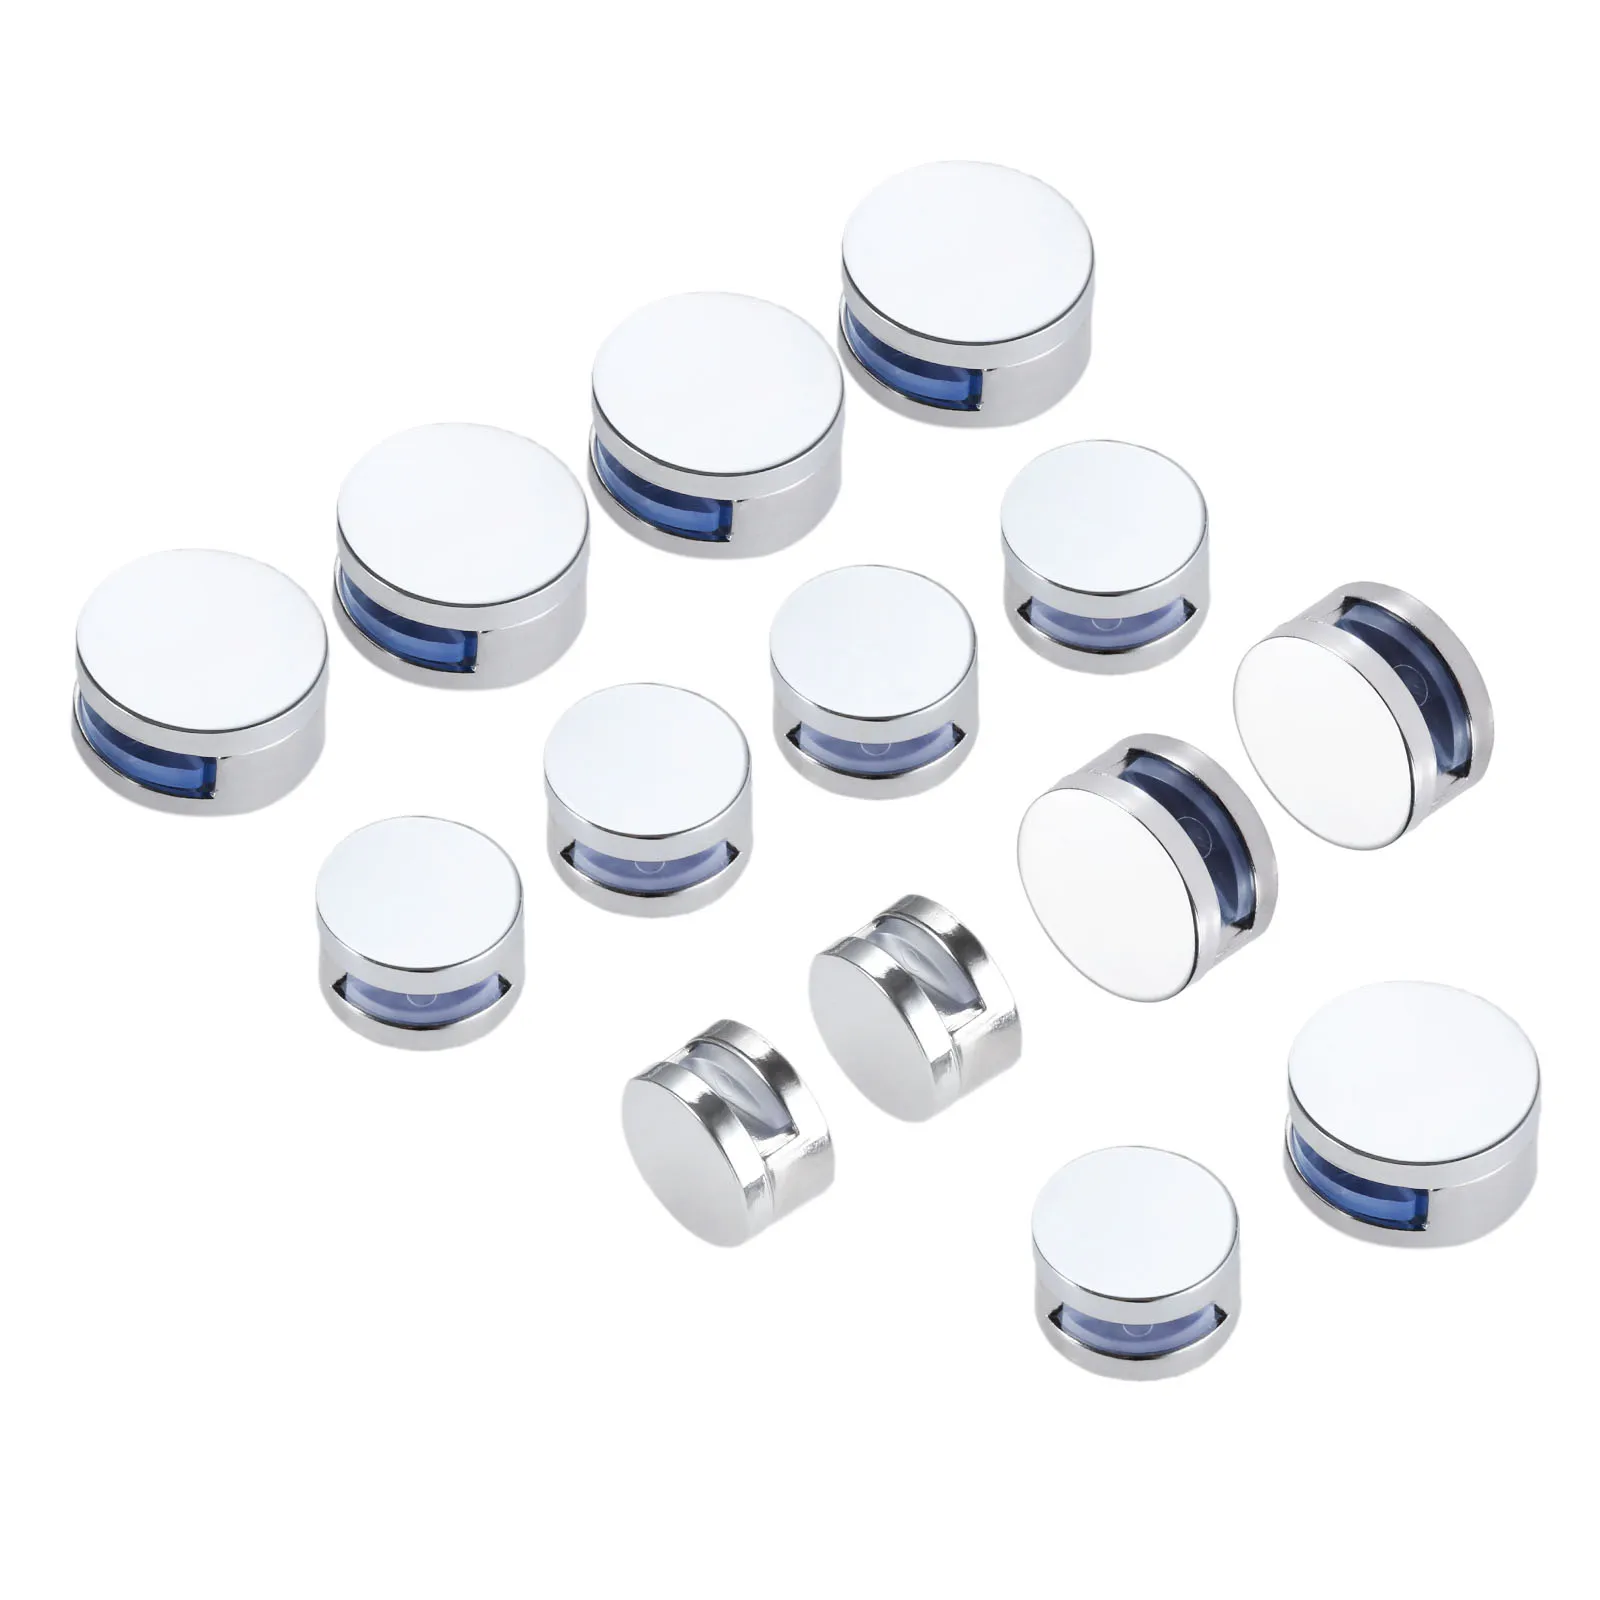 DRELD-Clips de espejo de aleación de Zinc, 10 unids/lote, abrazaderas para soportes de cristal de espejo de 3-5mm, 6-7mm de espesor, soporte de forma redonda